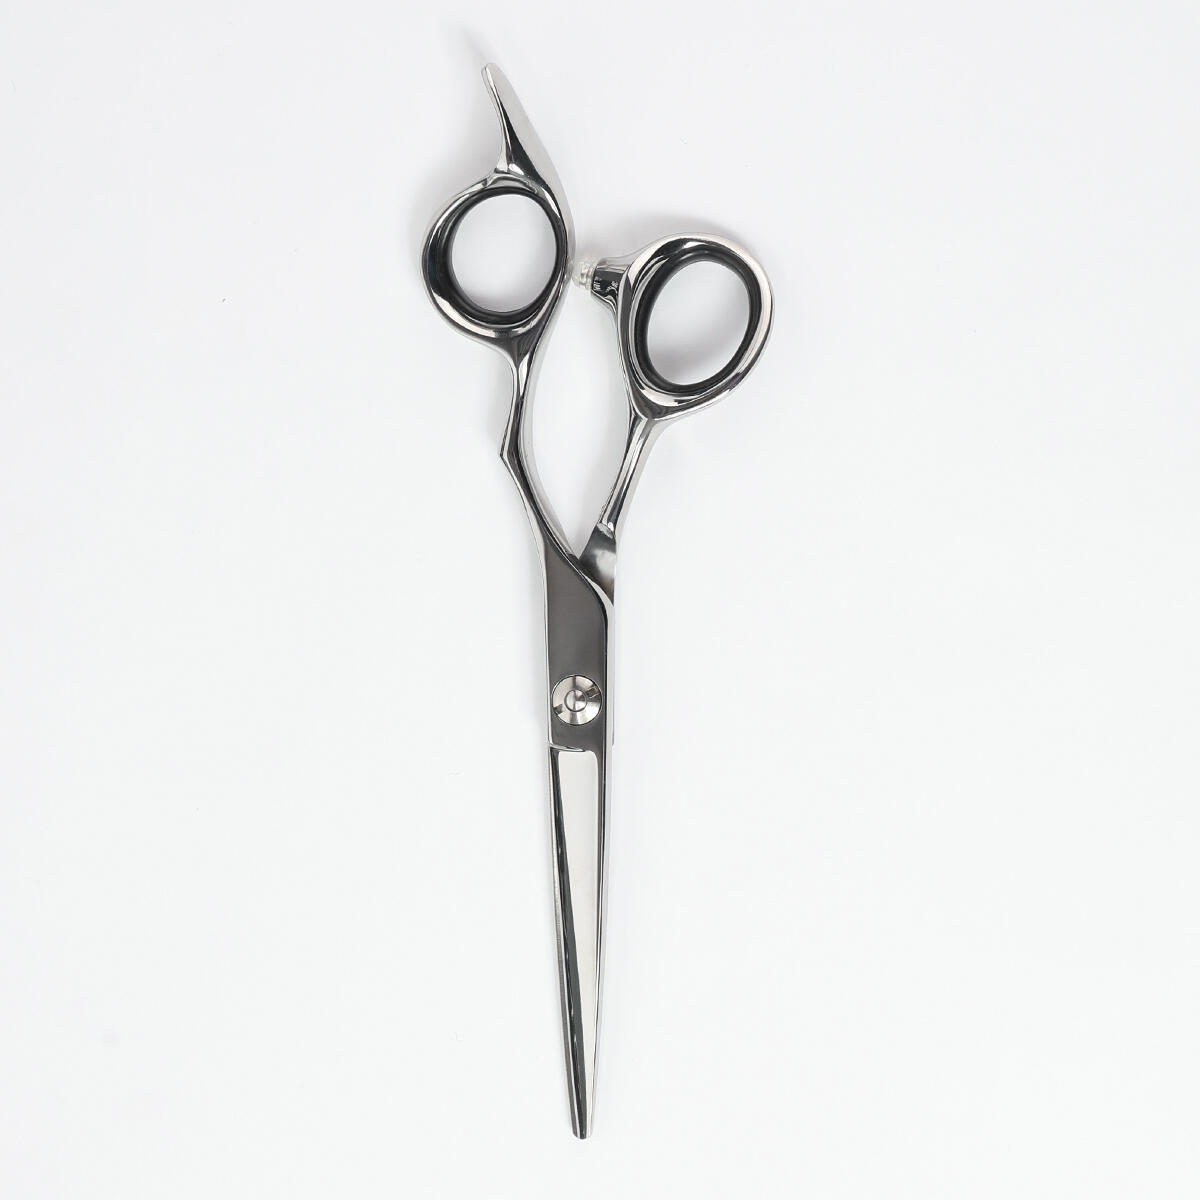 Extensions scissors Ergonomic undefined